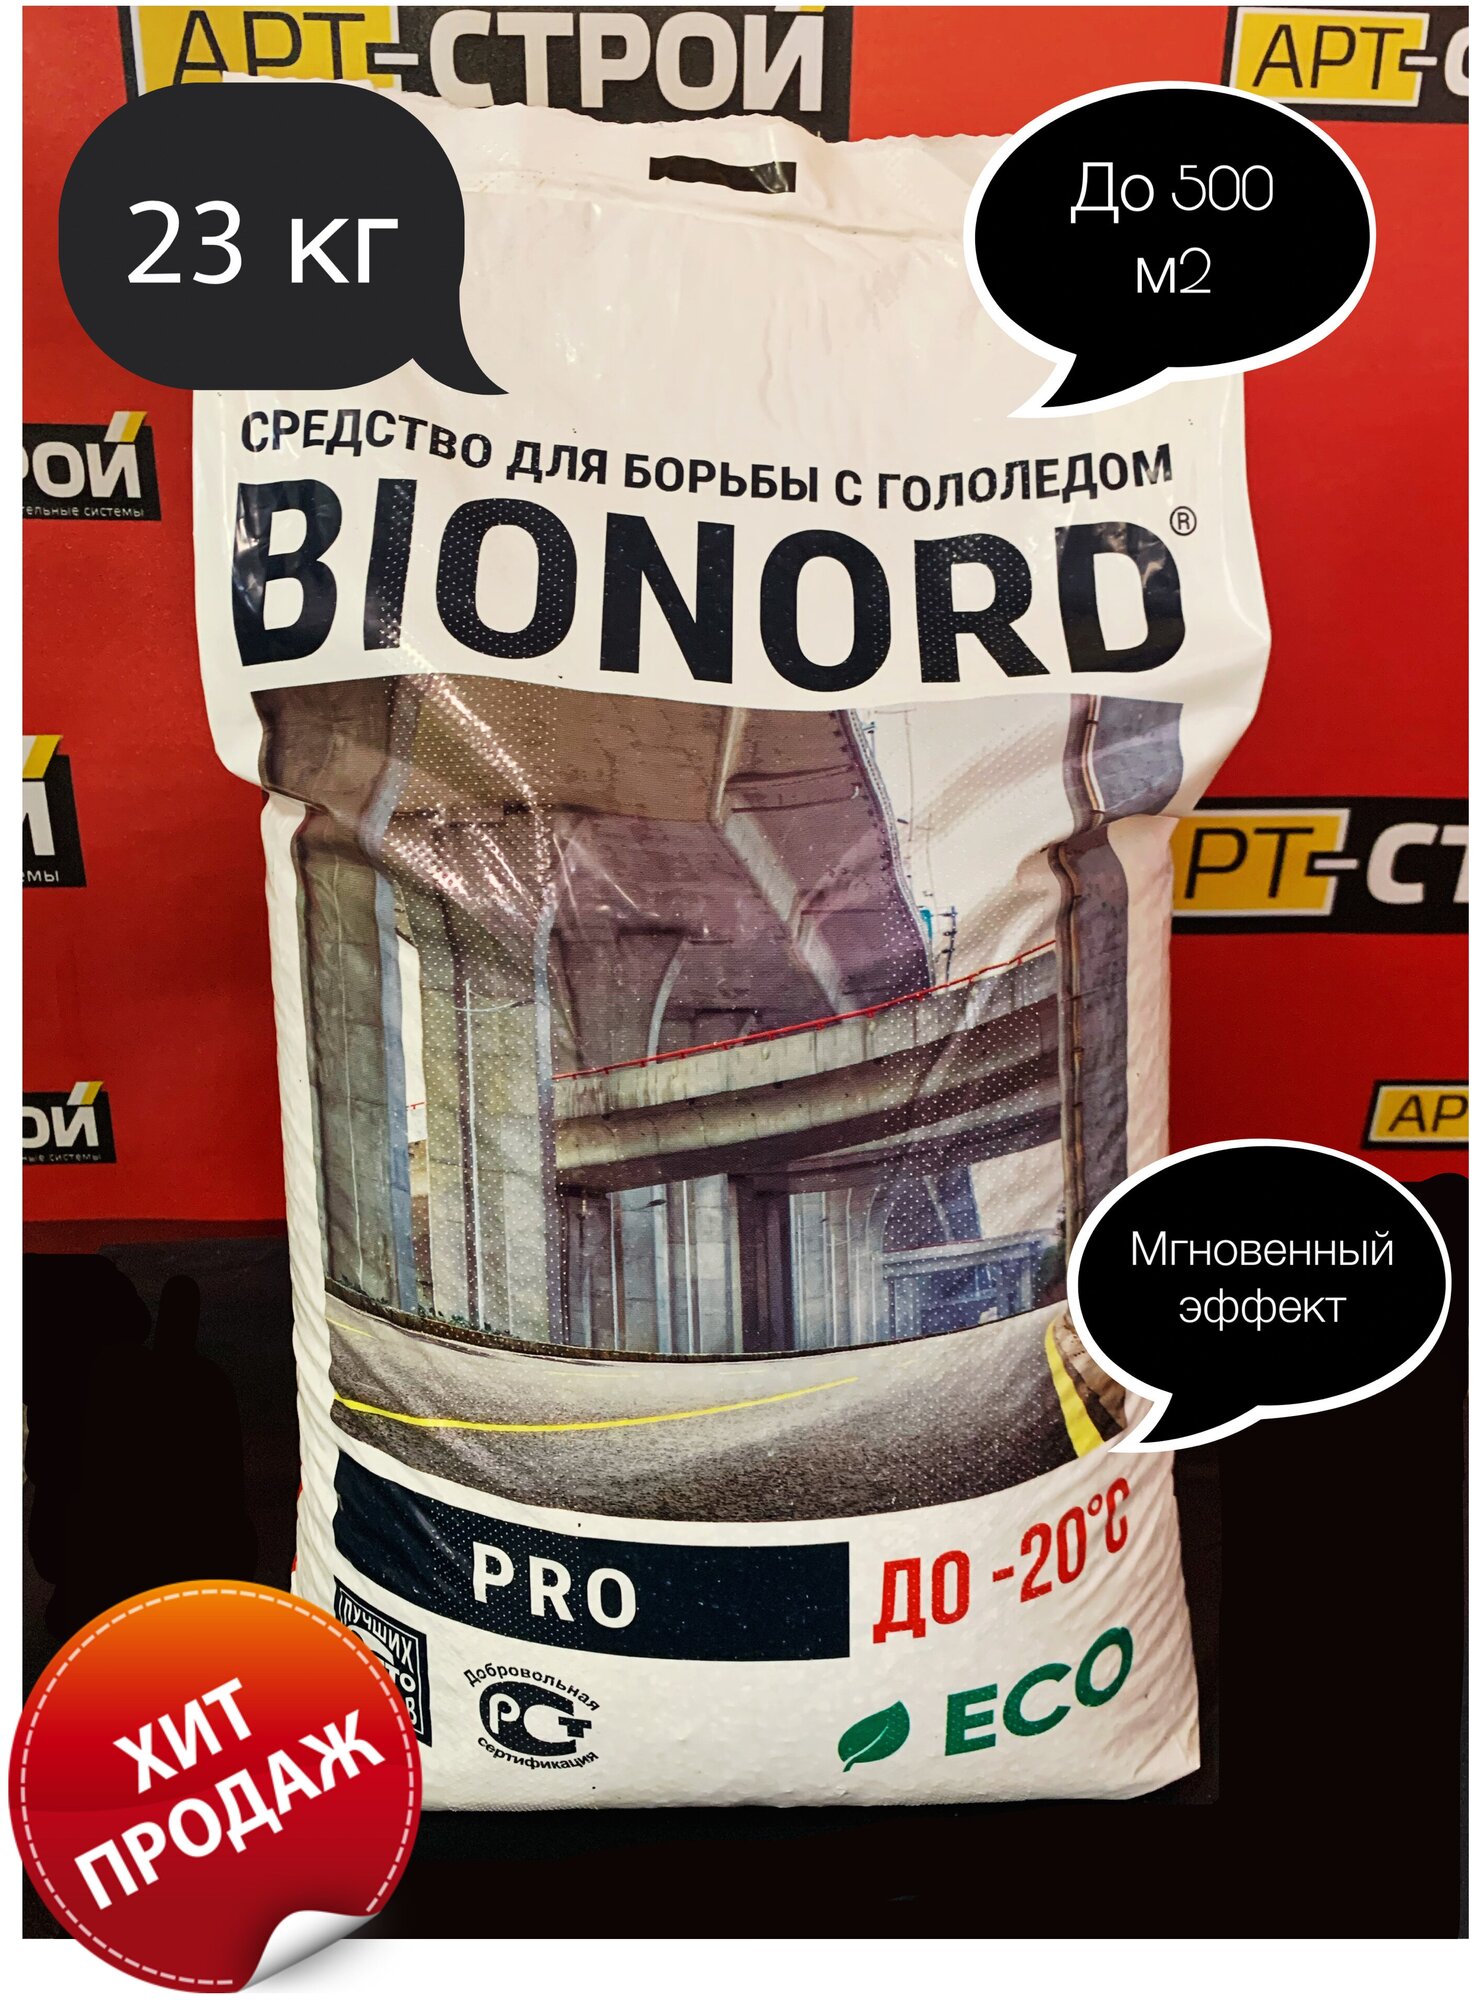 Бионорд PRO -20 противогололедный материал в грануле 23 кг